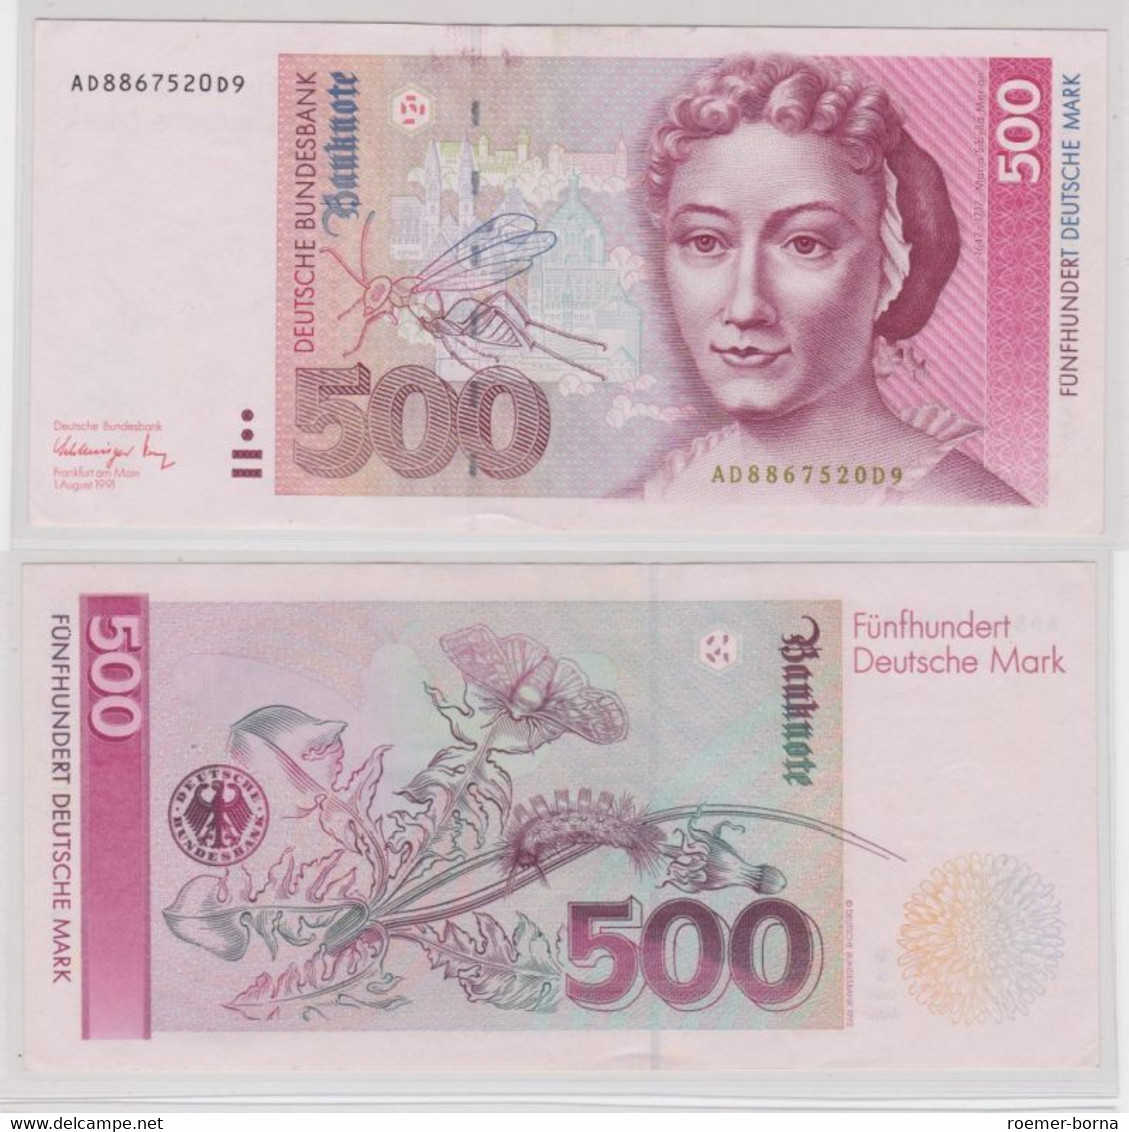 T140673 Banknote 500 DM Deutsche Mark Ro. 301a Schein 1.8.1991 KN AD 8867520 D9 - 500 DM